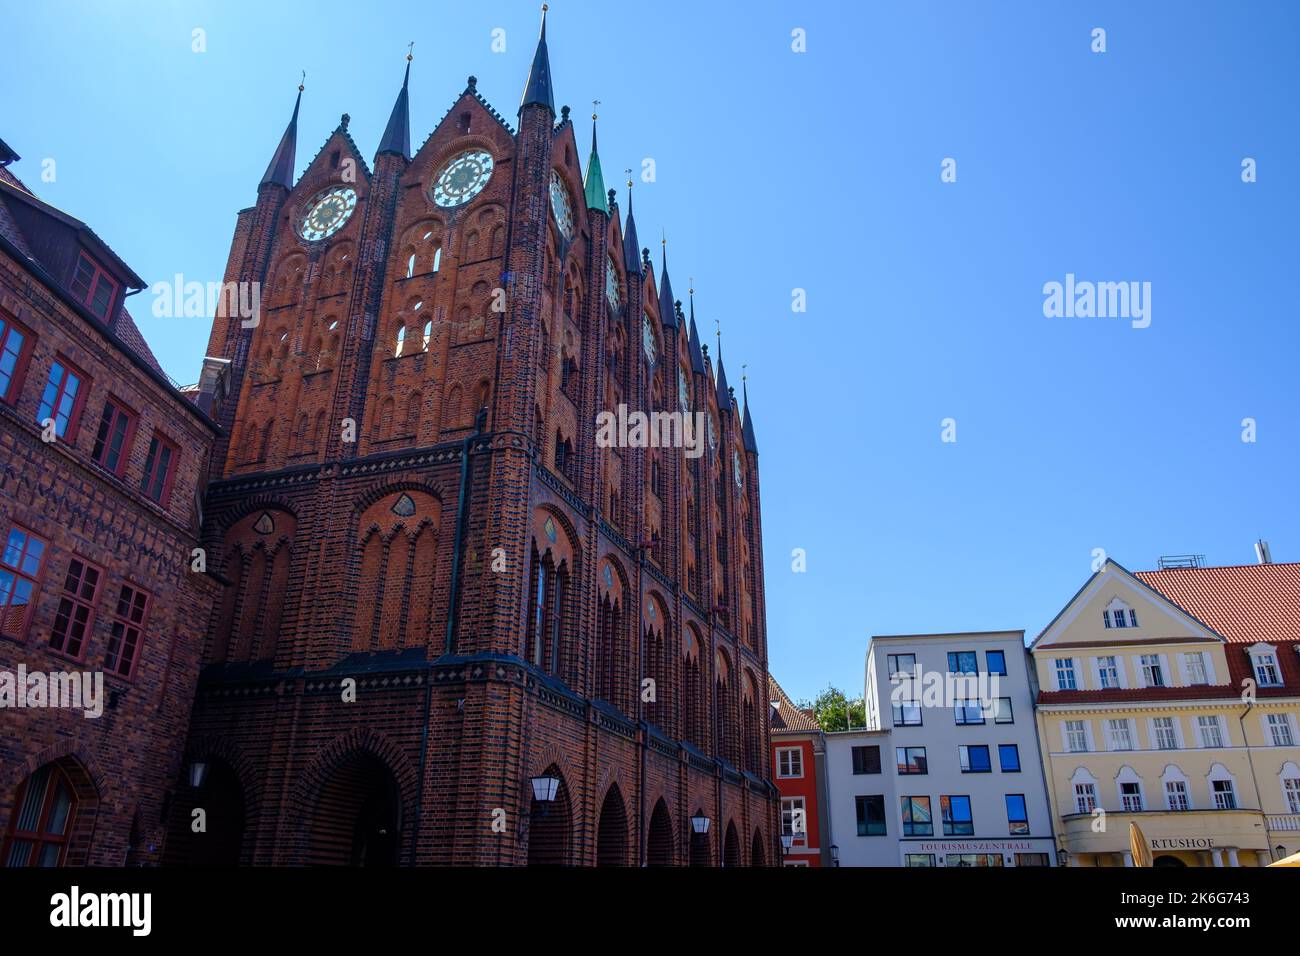 Nordseite des mittelalterlichen Rathauses mit gotischen Schaugiebeln, Alter Marktplatz, Hansestadt Stralsund, Mecklenburg-Vorpommern, Deutschland. Stockfoto